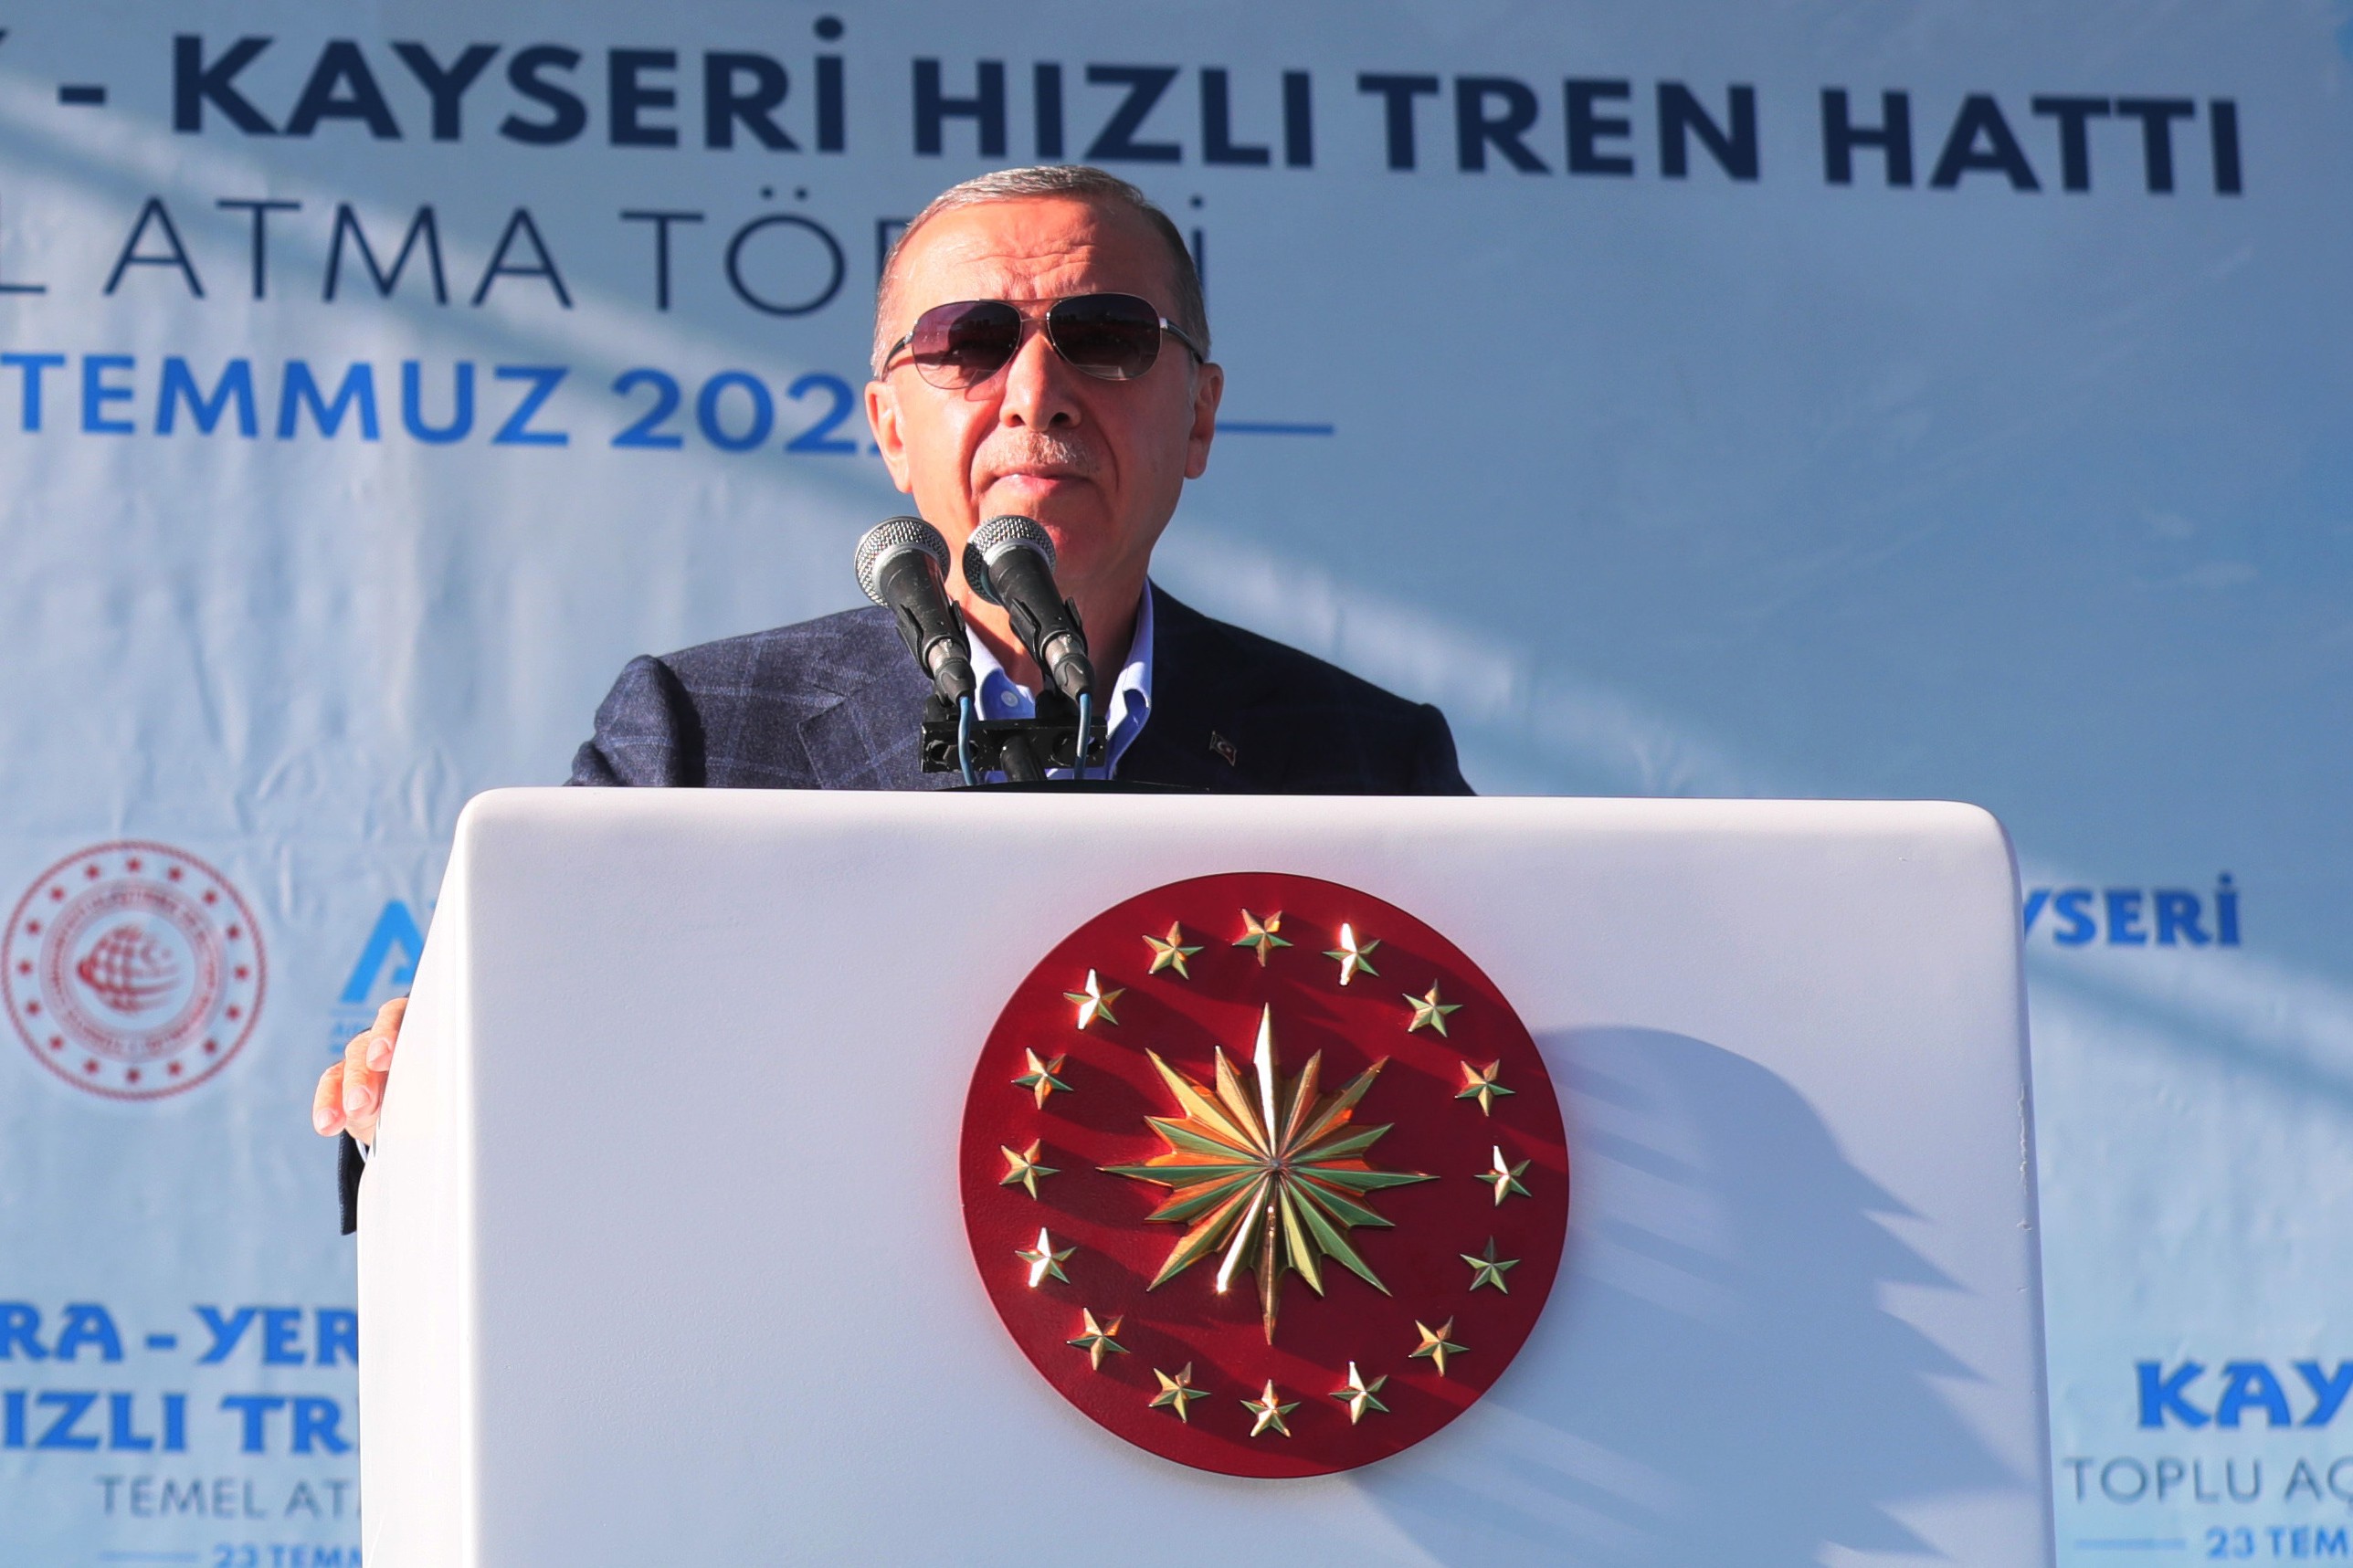 Cumhurbaşkanı Recep Tayyip Erdoğan'ın Kayseri mitinginden bir fotoğraf.